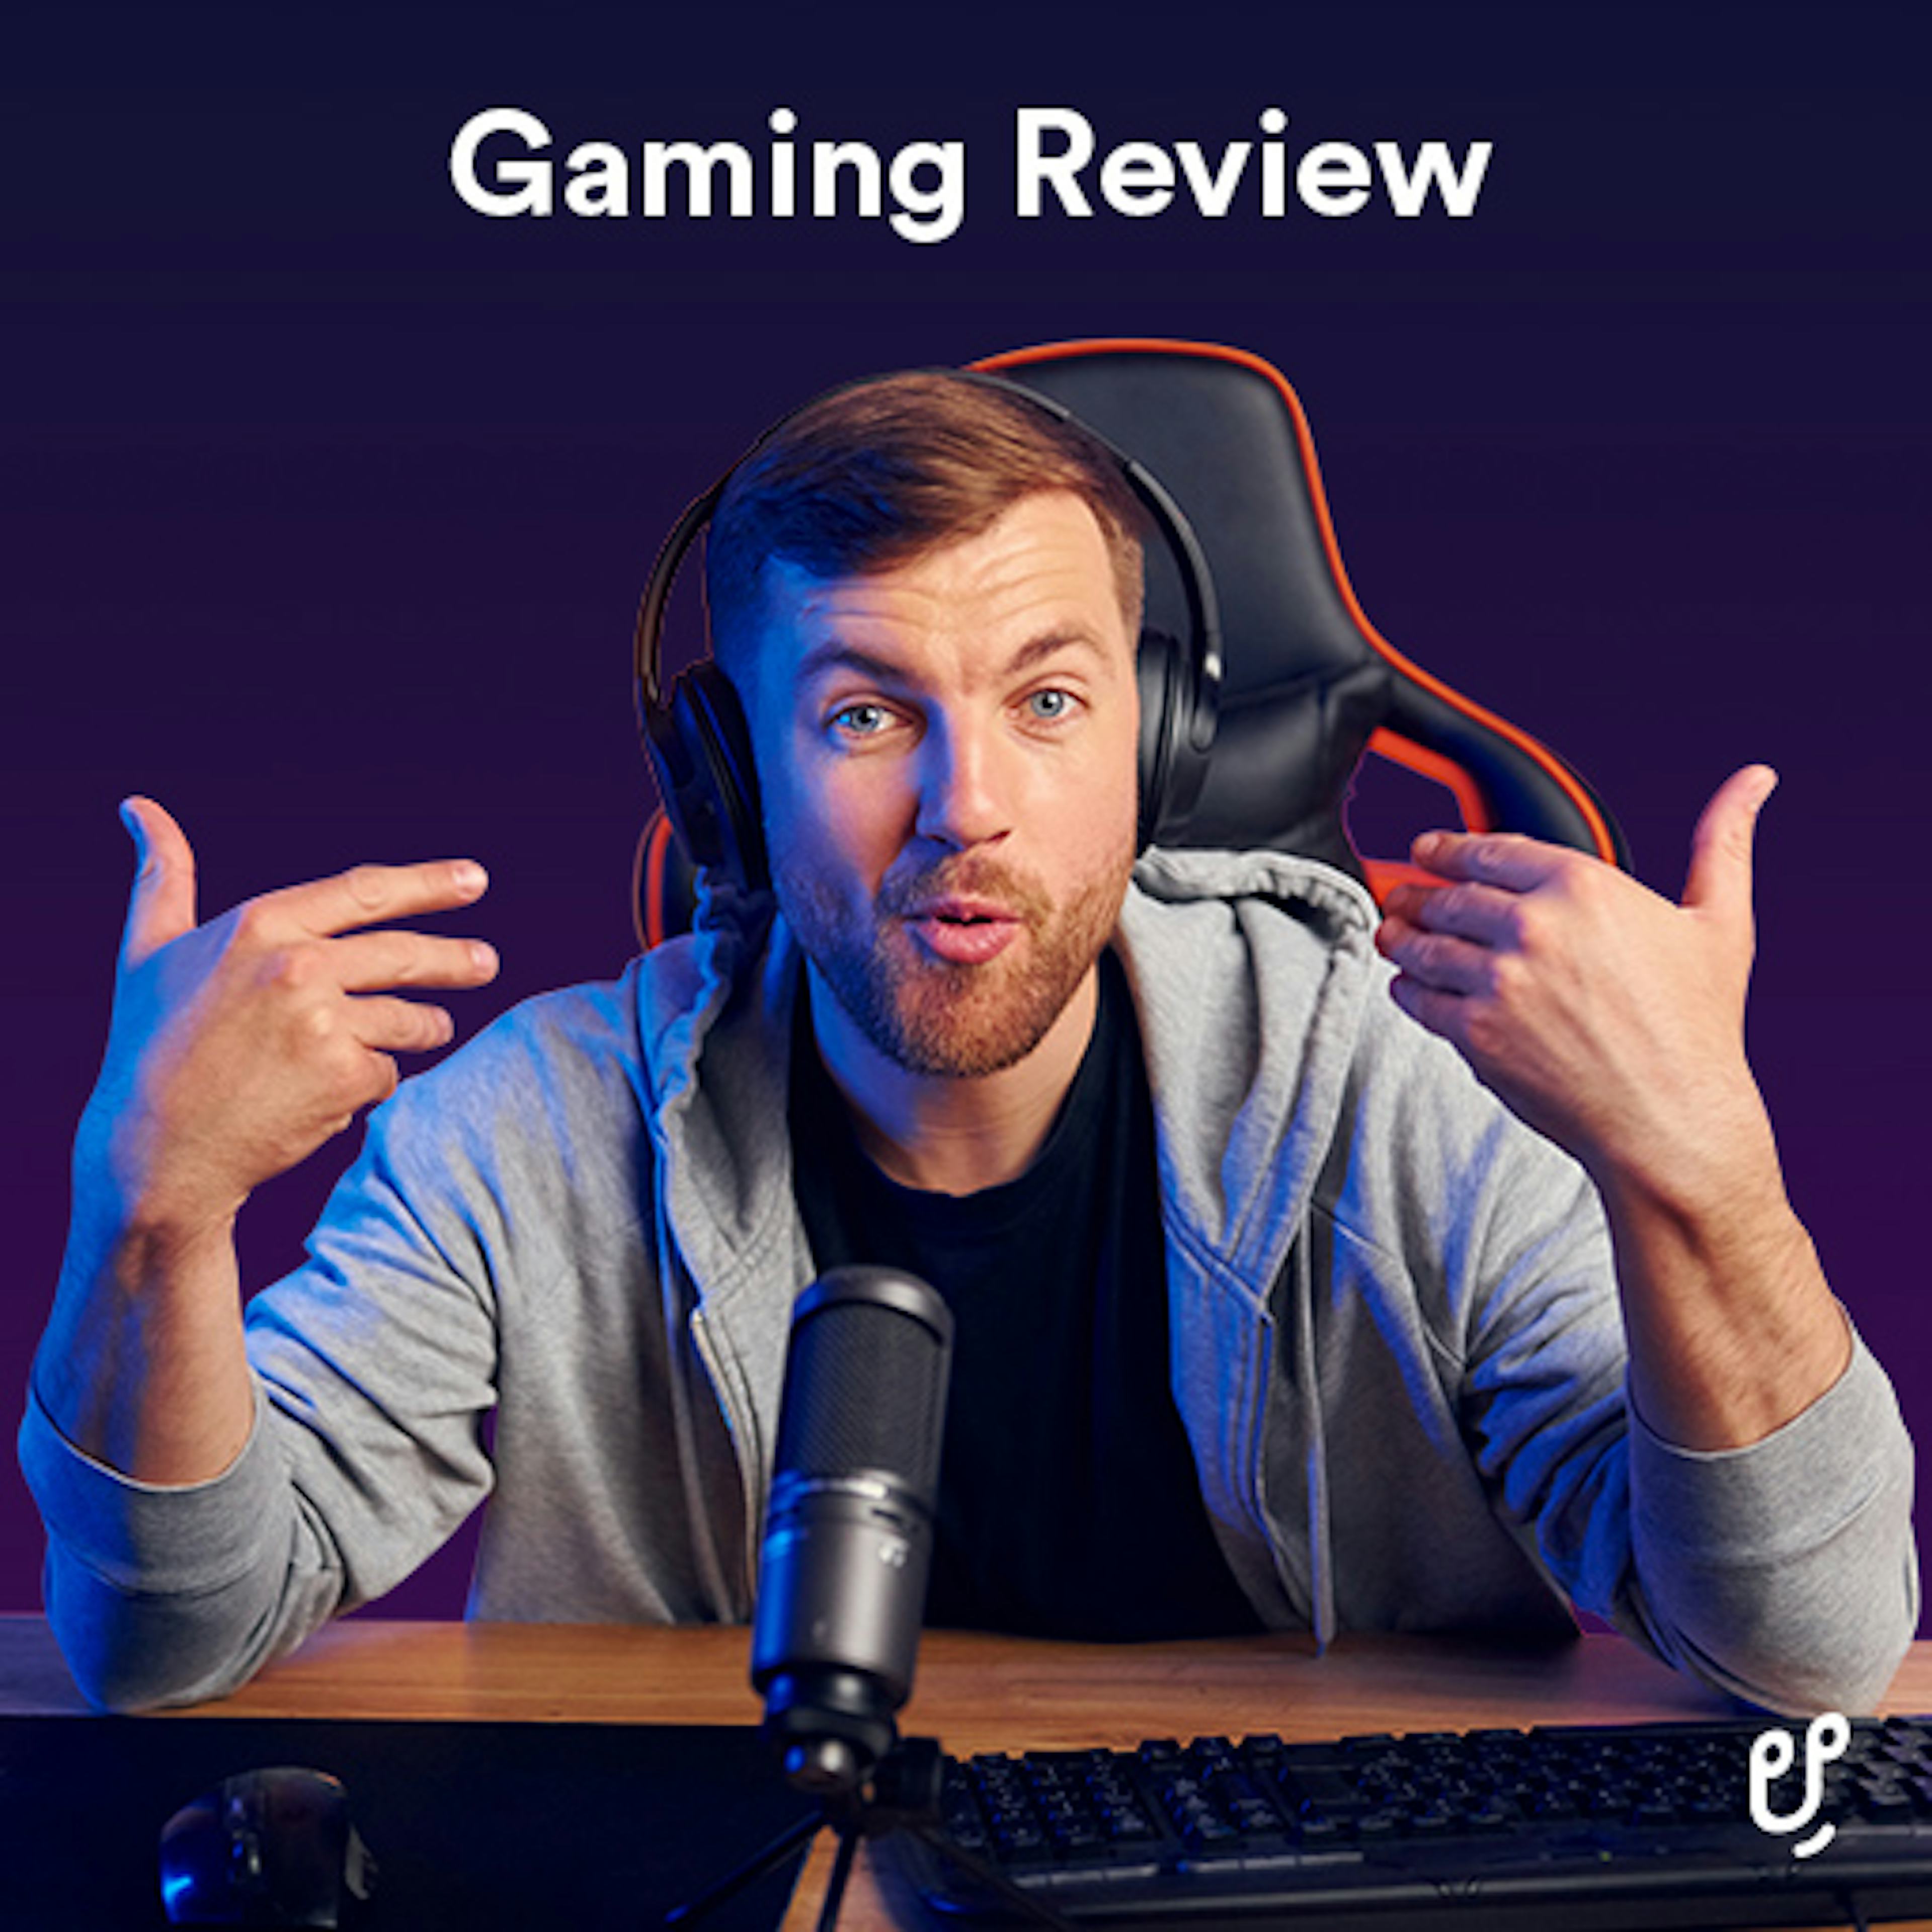 Gaming Review artwork